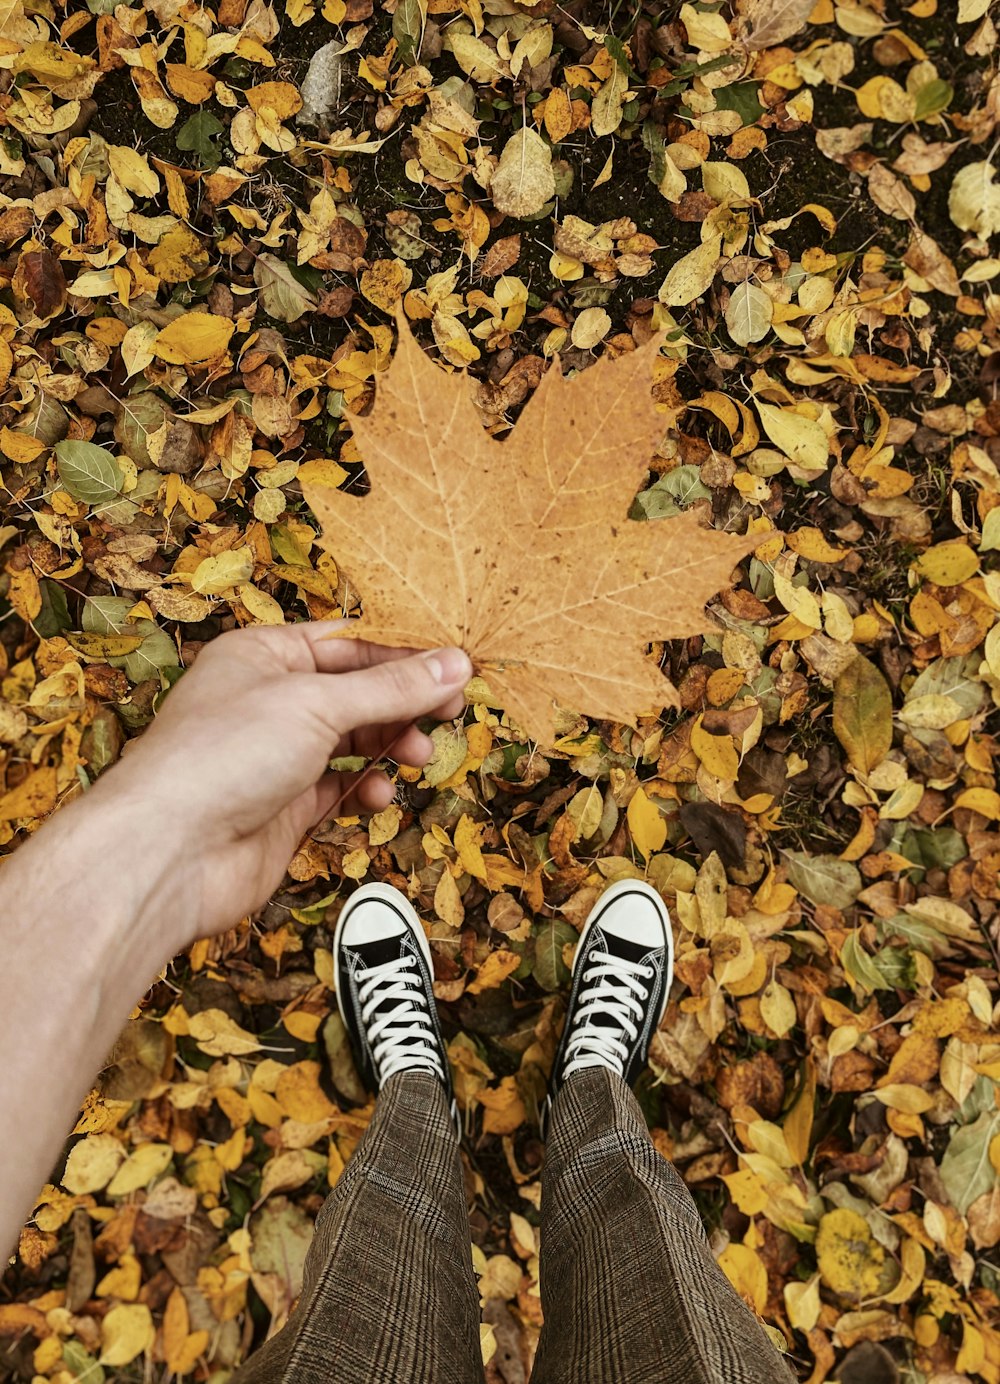 La mano di una persona su un mucchio di foglie